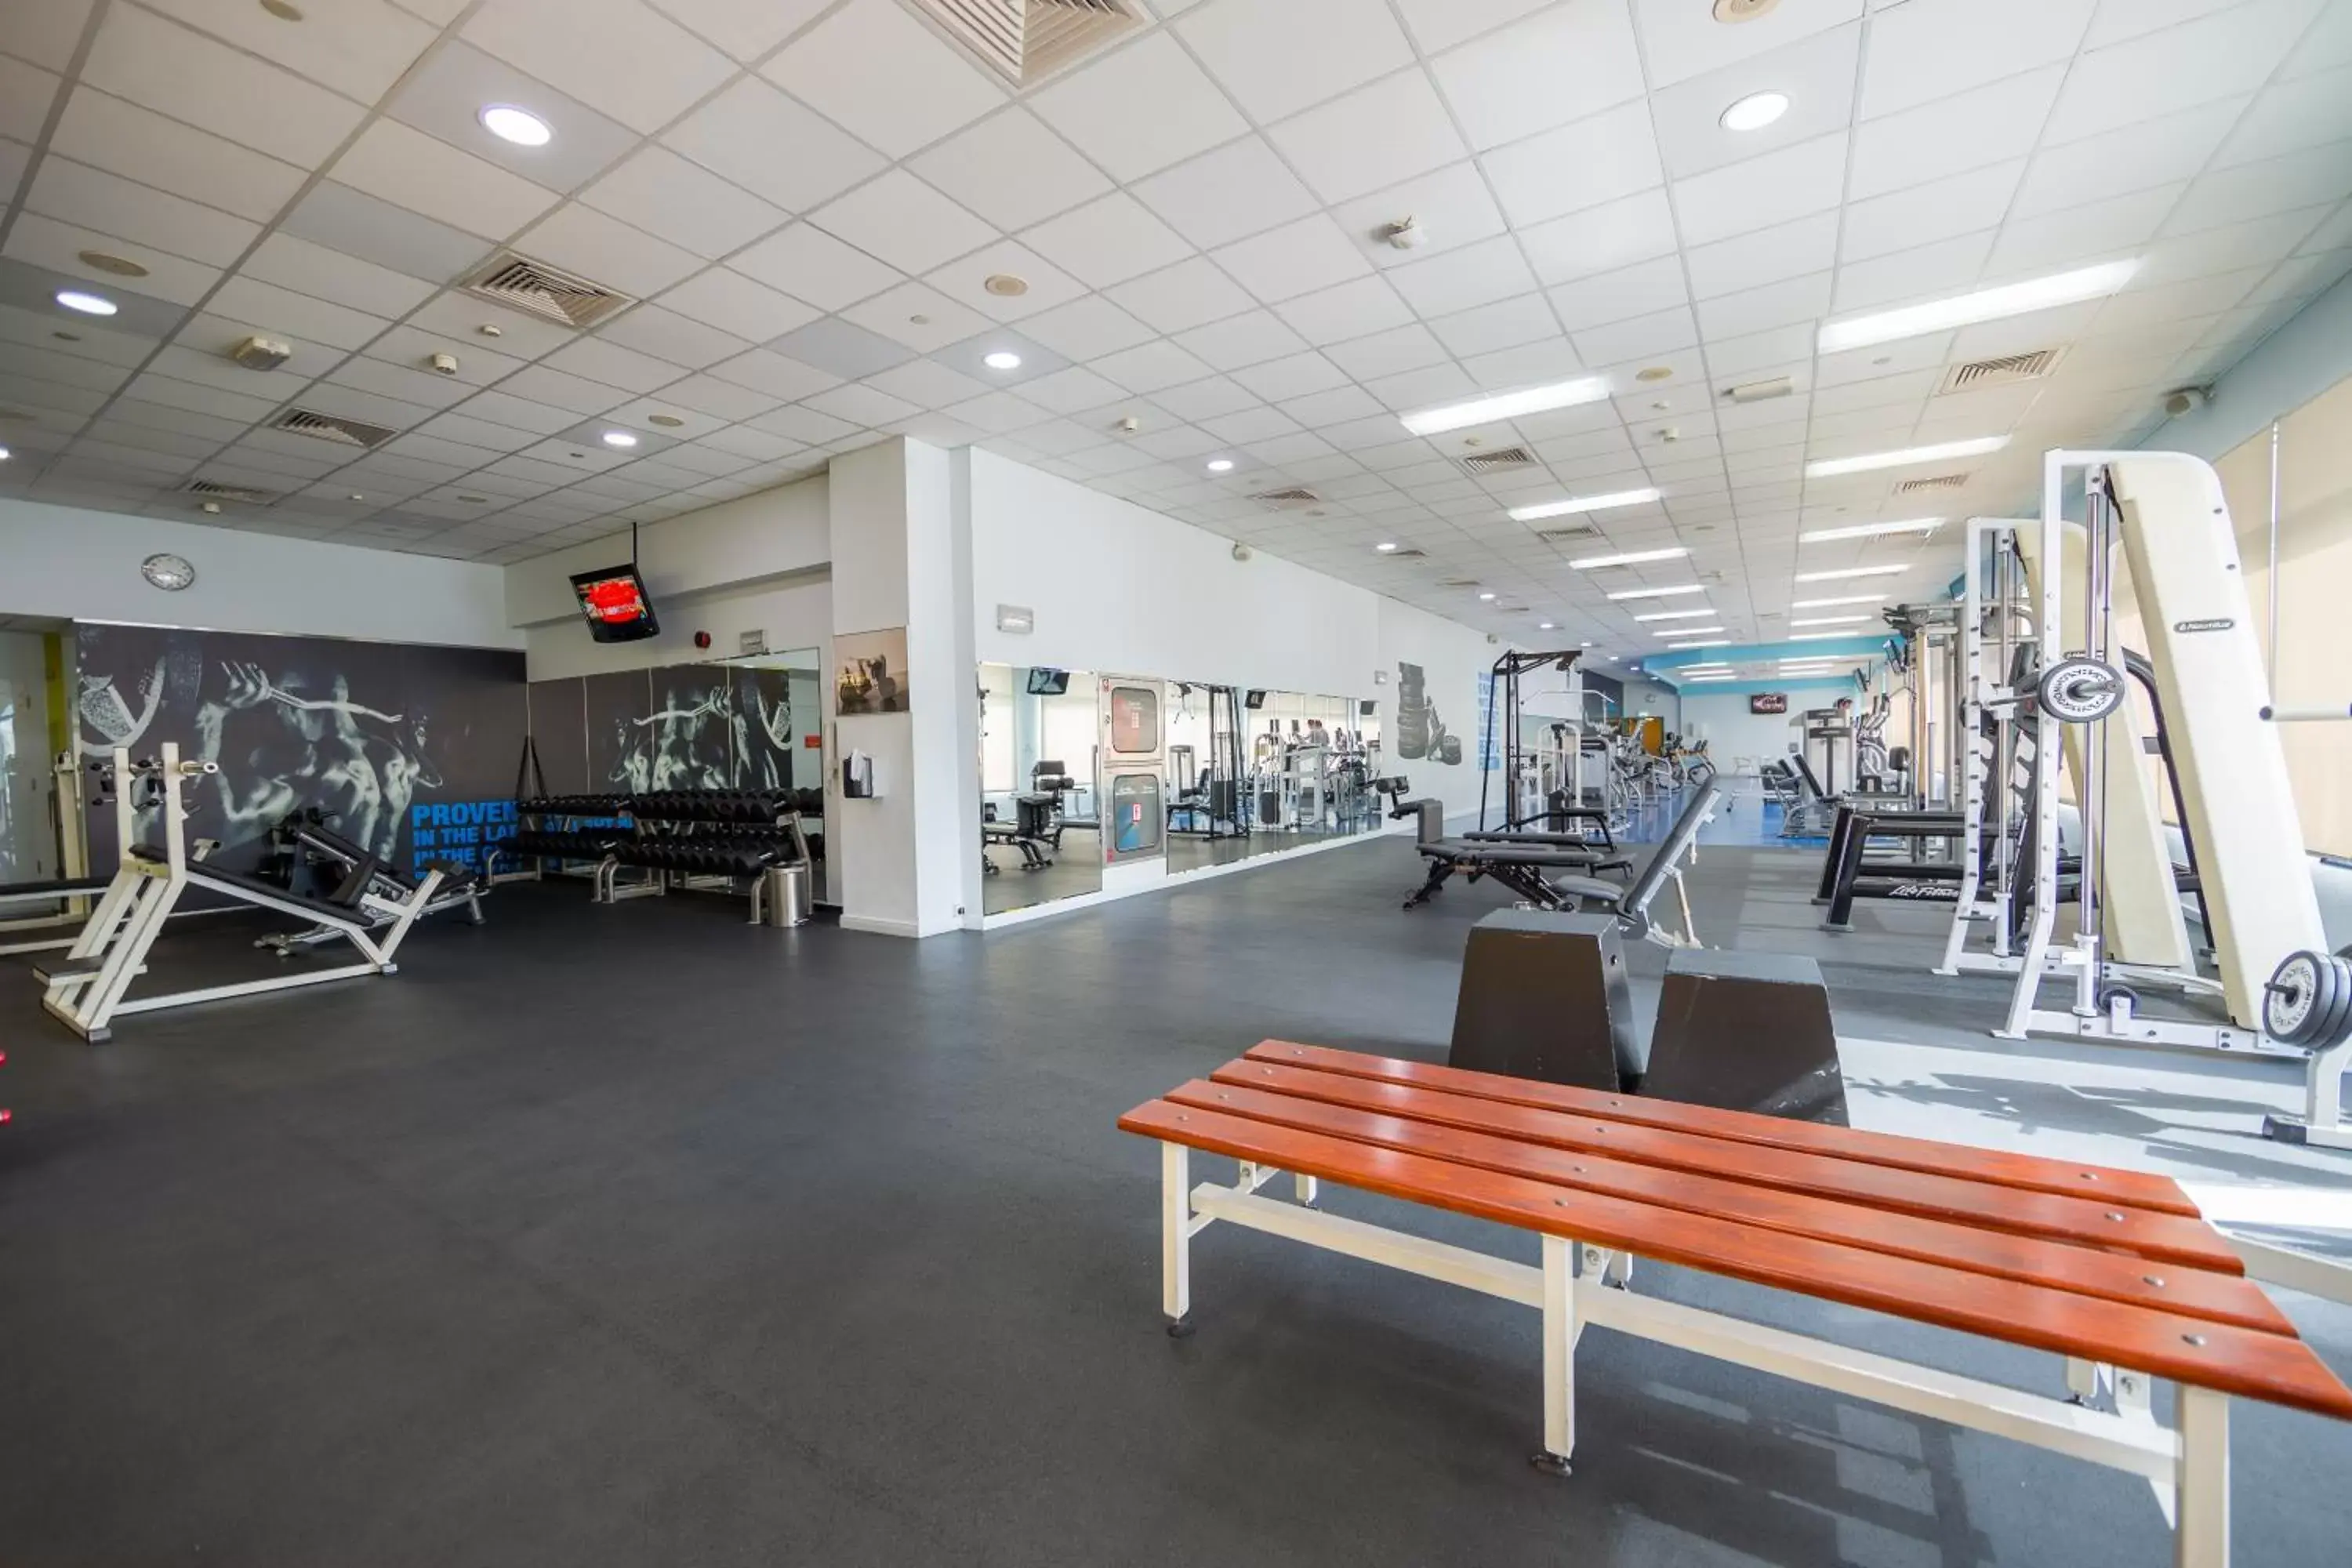 Fitness centre/facilities, Fitness Center/Facilities in Mövenpick Grand Al Bustan